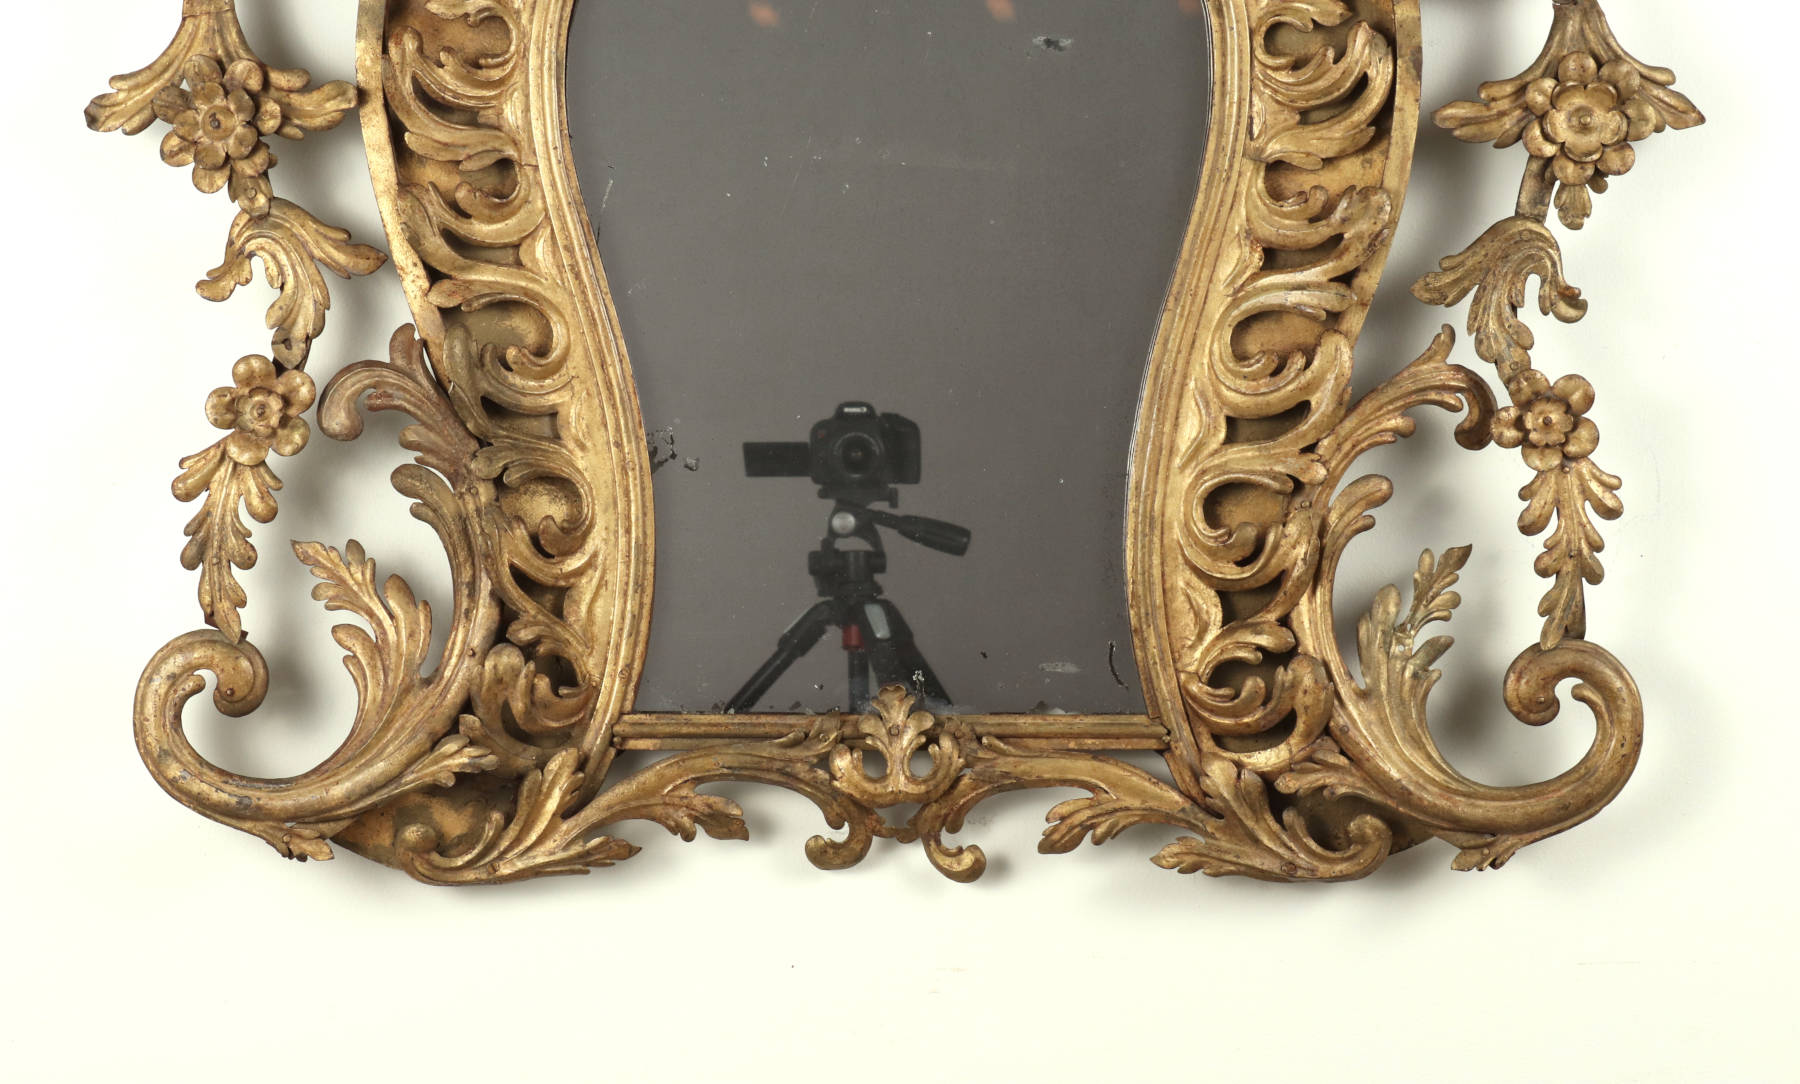 Gilt Wrought Iron Mirror, 18th c.